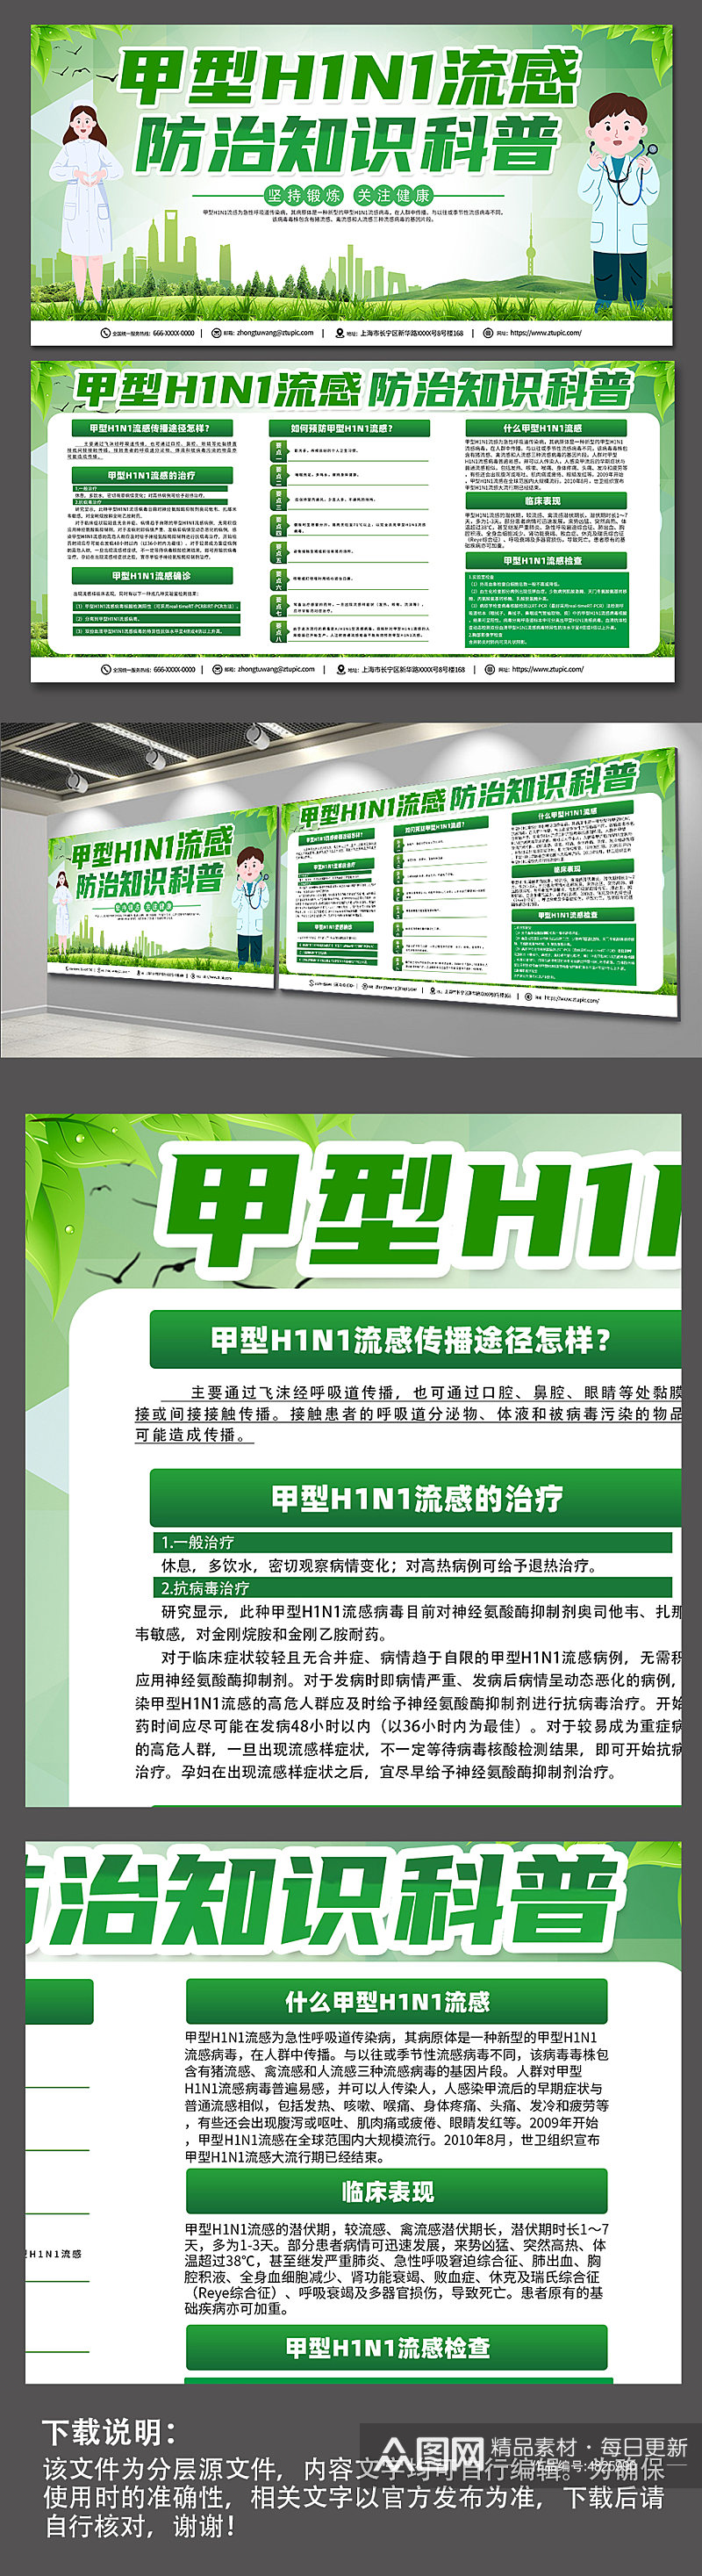 甲型H1N1流感防治知识医疗展板素材